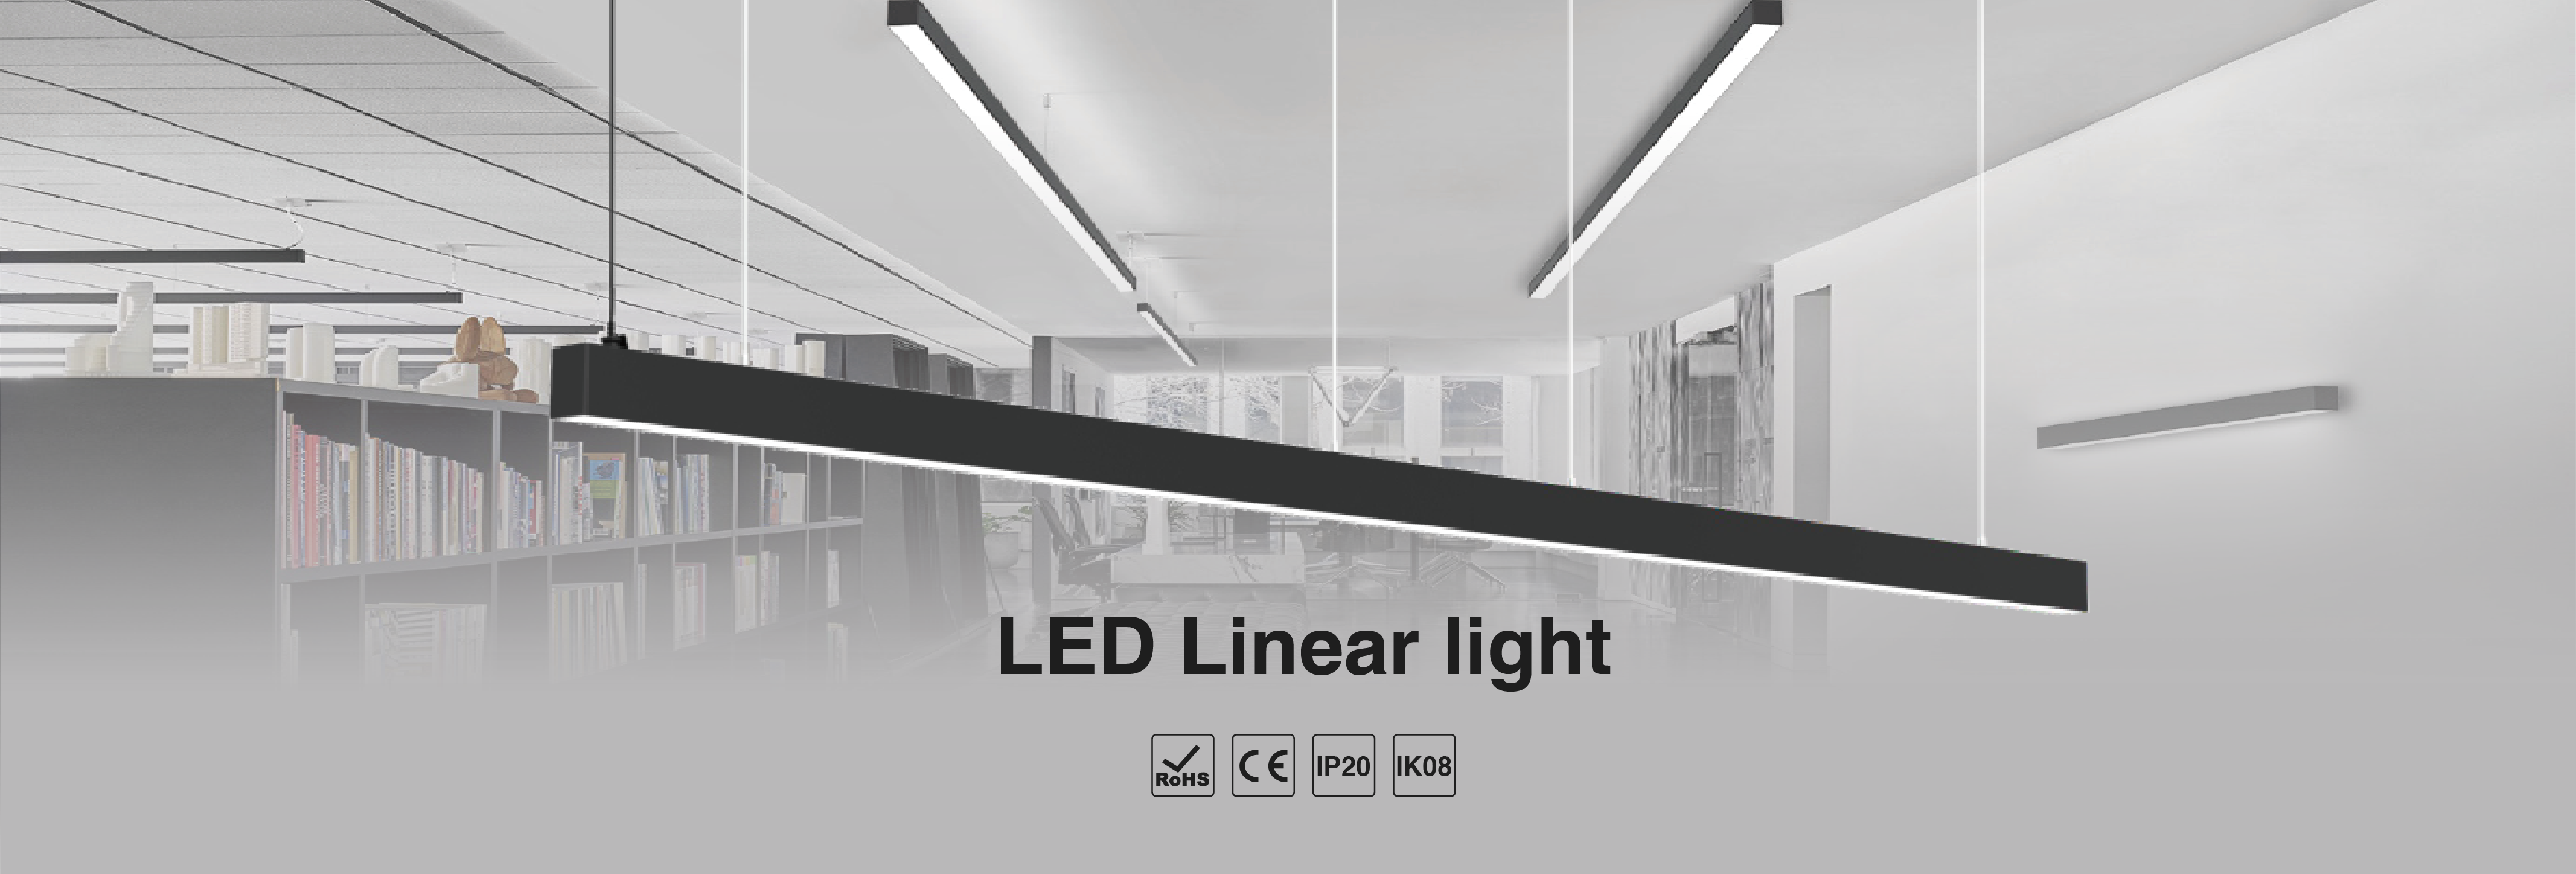 Led Linear Light